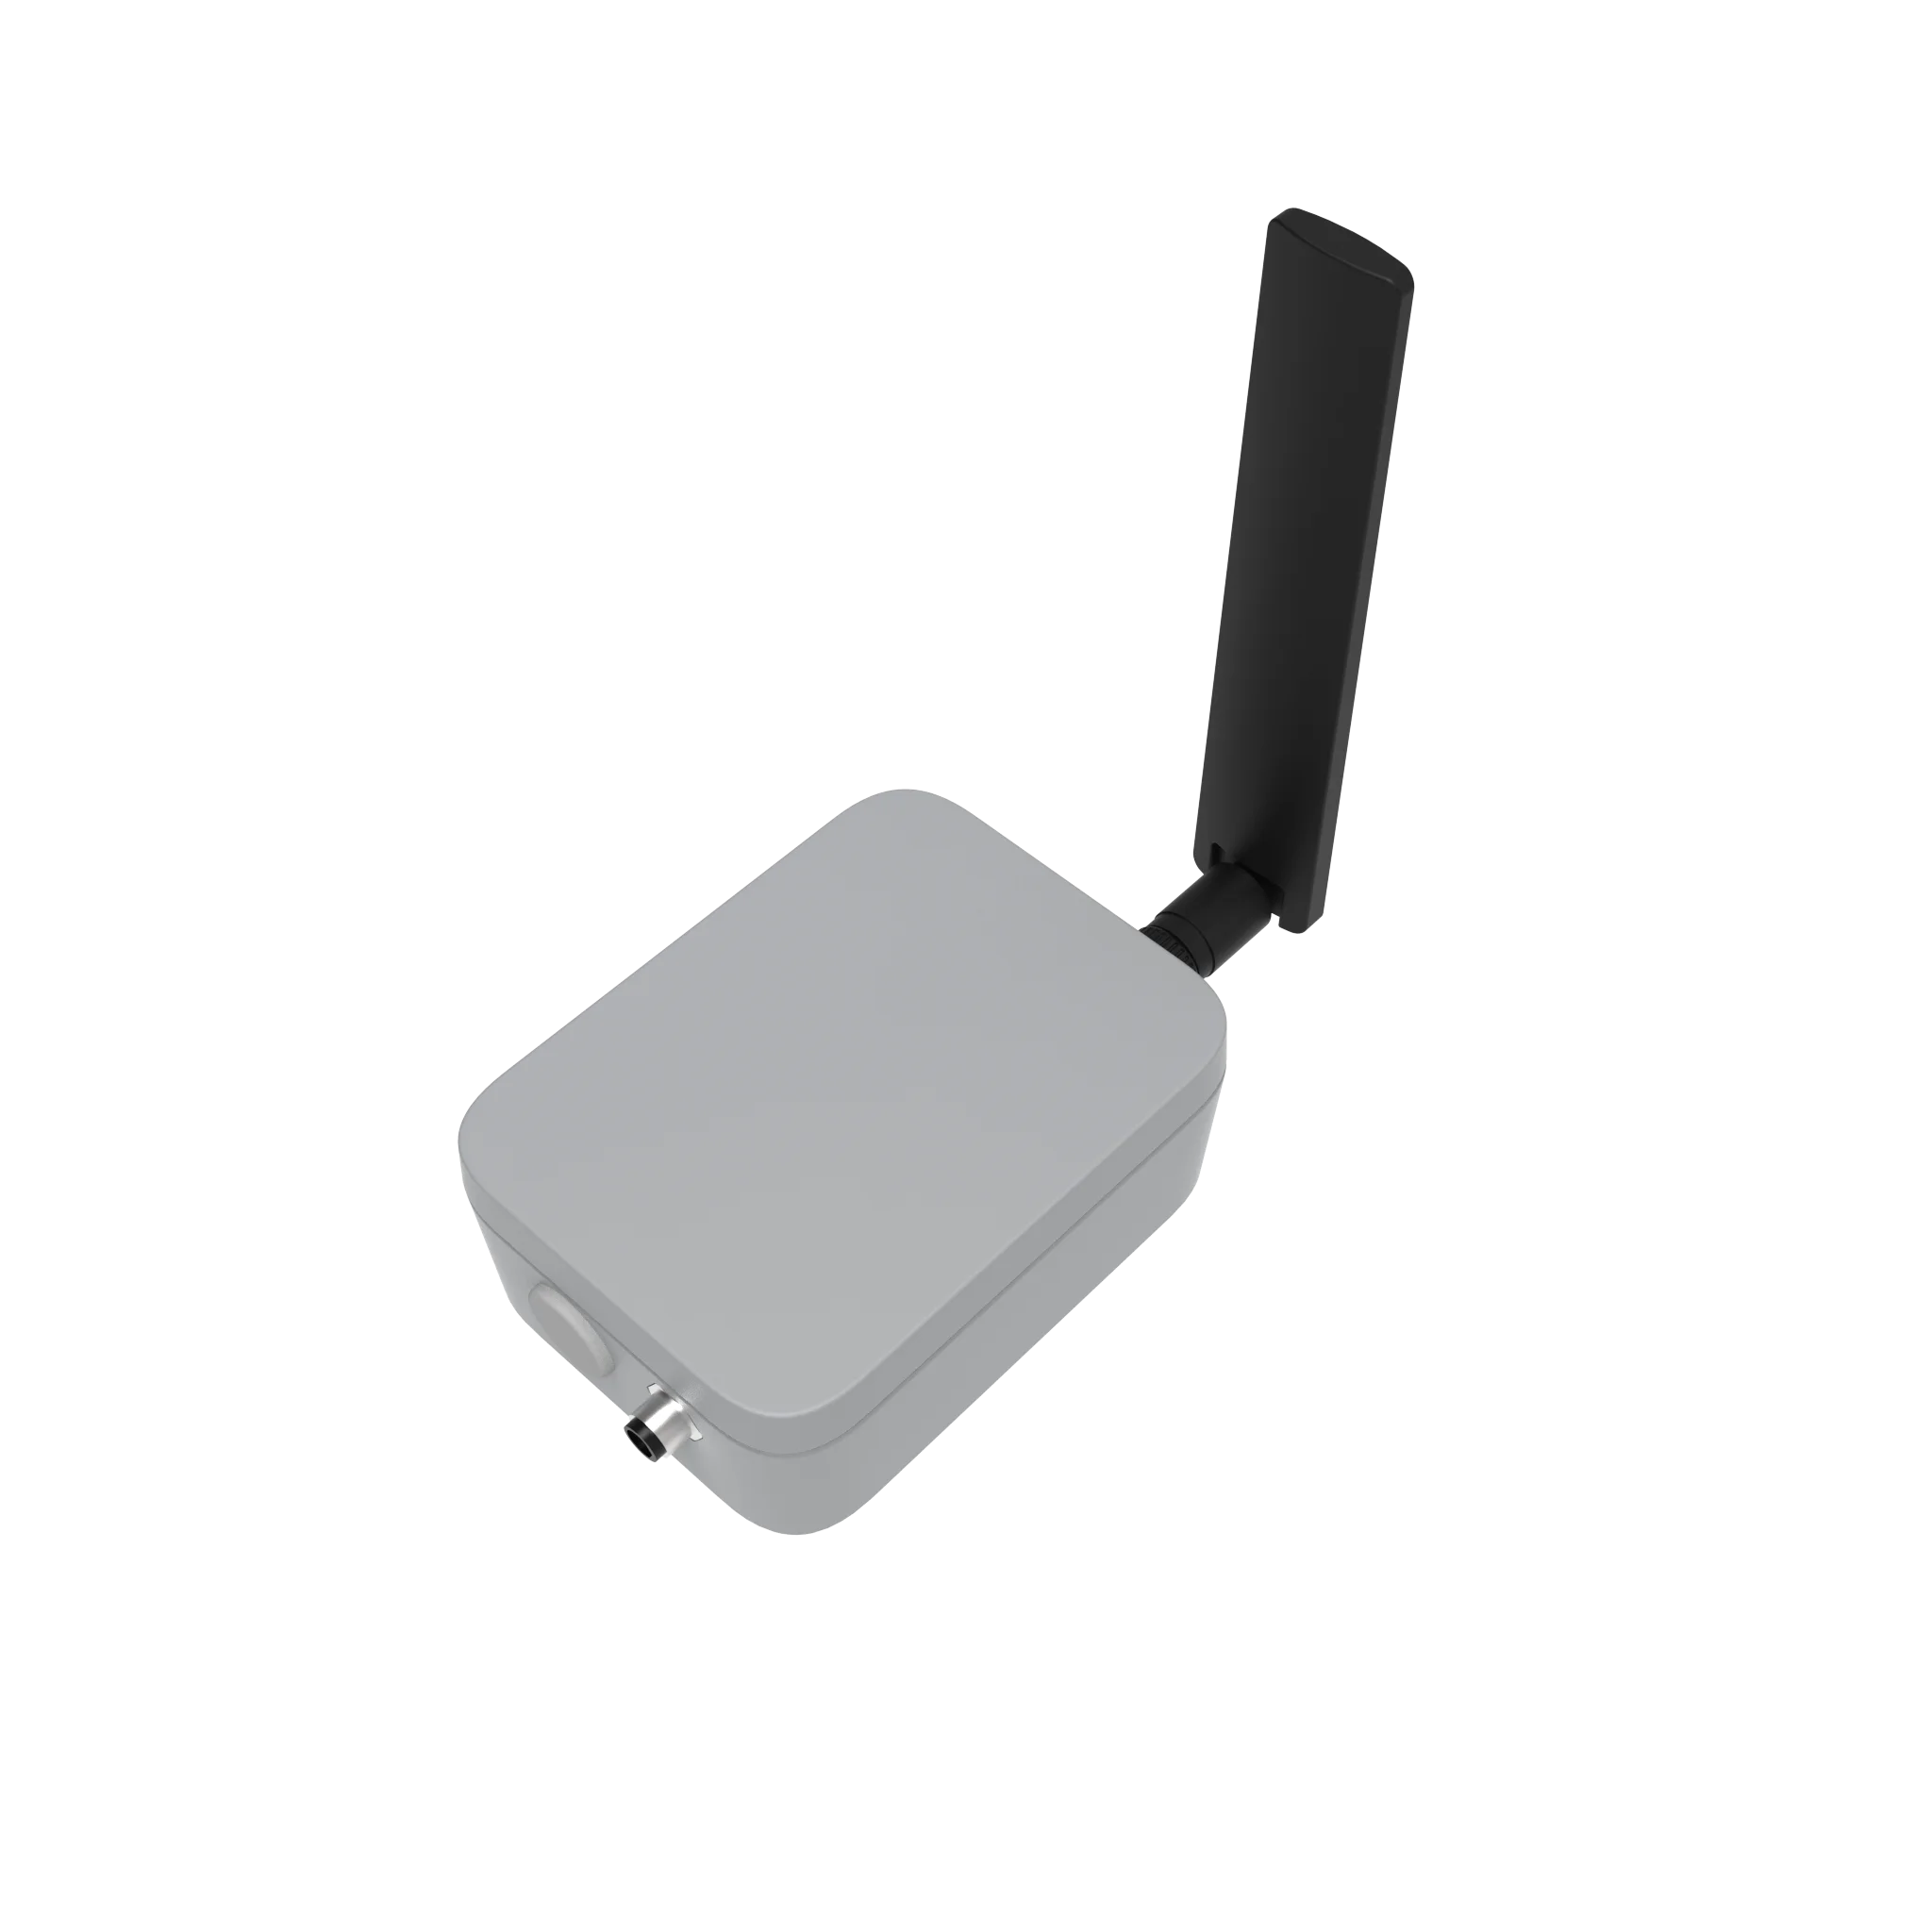 O Link.UM - LTE-M NB-IoT LoRaWAN Dispositivo com base na nRF52840, SX1262 e BG77 IDE Arduino compatível